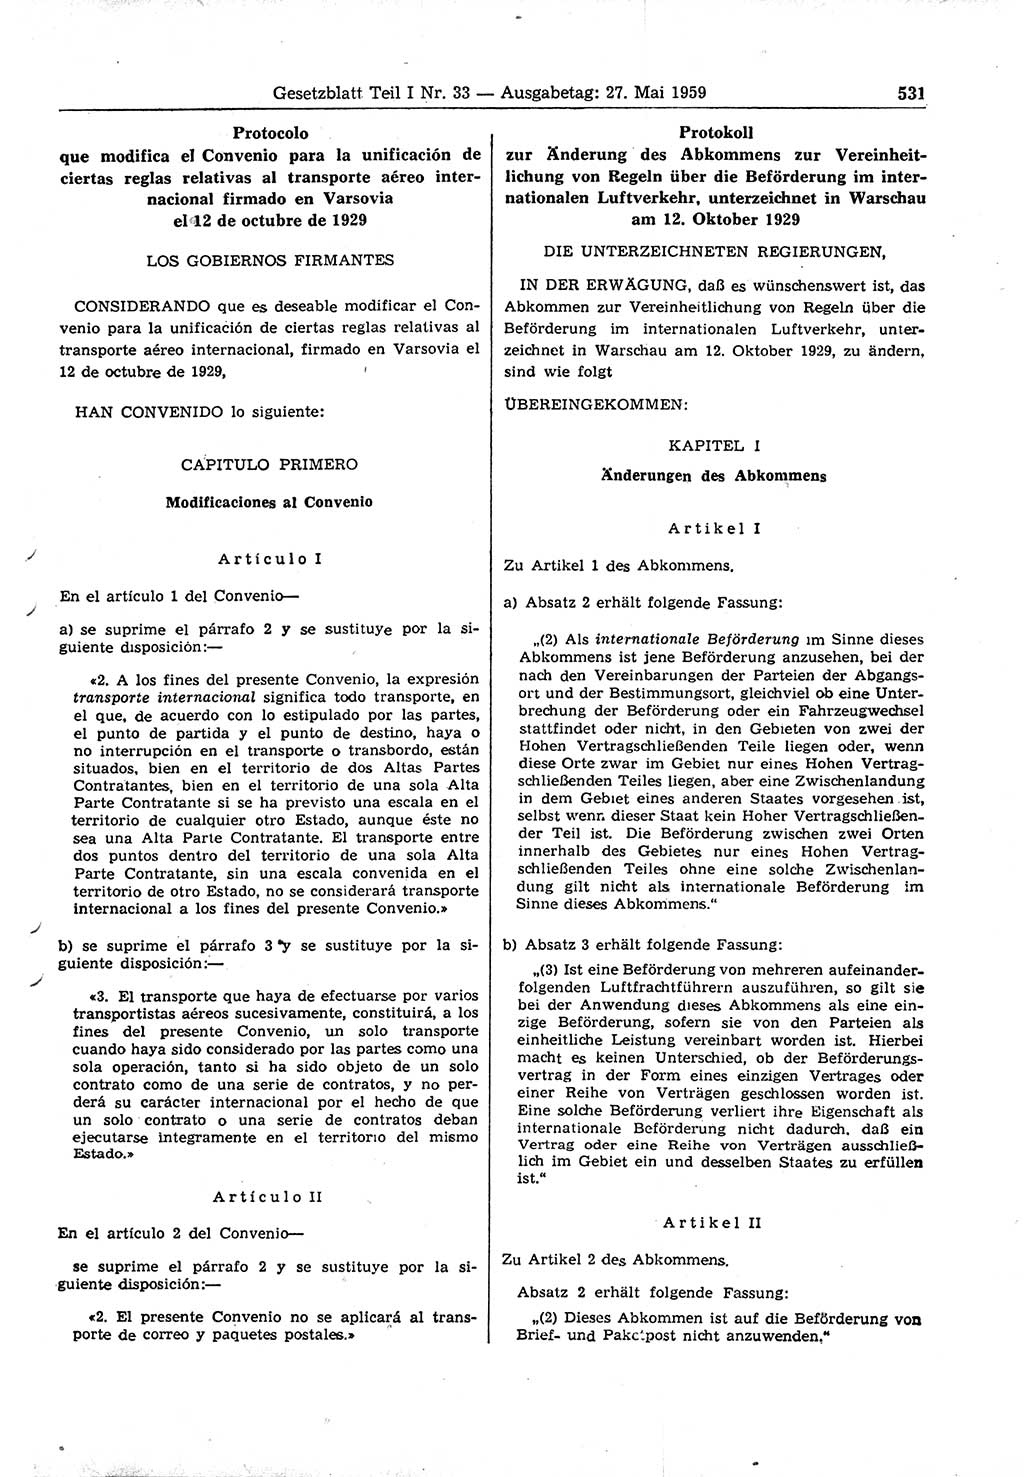 Gesetzblatt (GBl.) der Deutschen Demokratischen Republik (DDR) Teil Ⅰ 1959, Seite 531 (GBl. DDR Ⅰ 1959, S. 531)